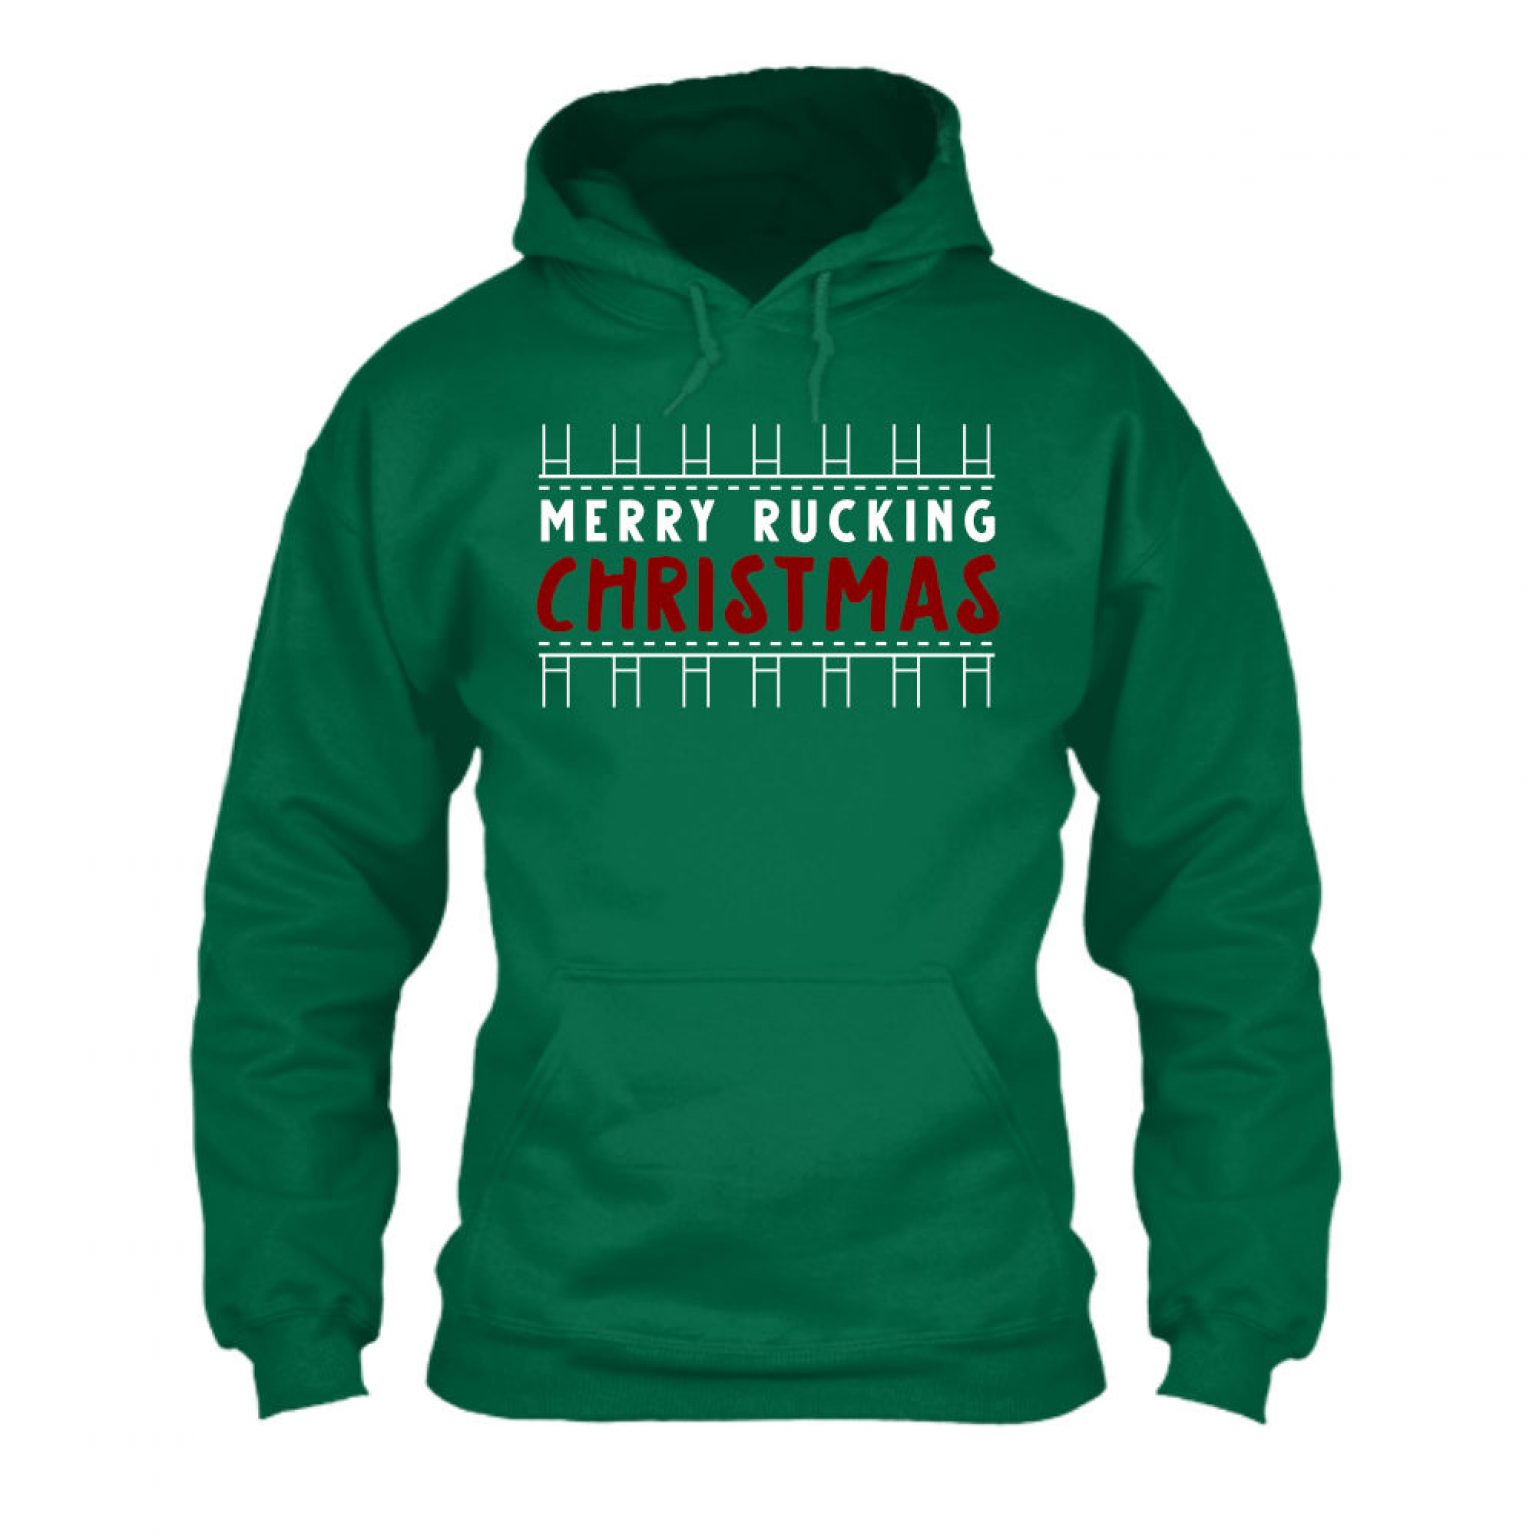 merryruckingchristmas herren hoodie green